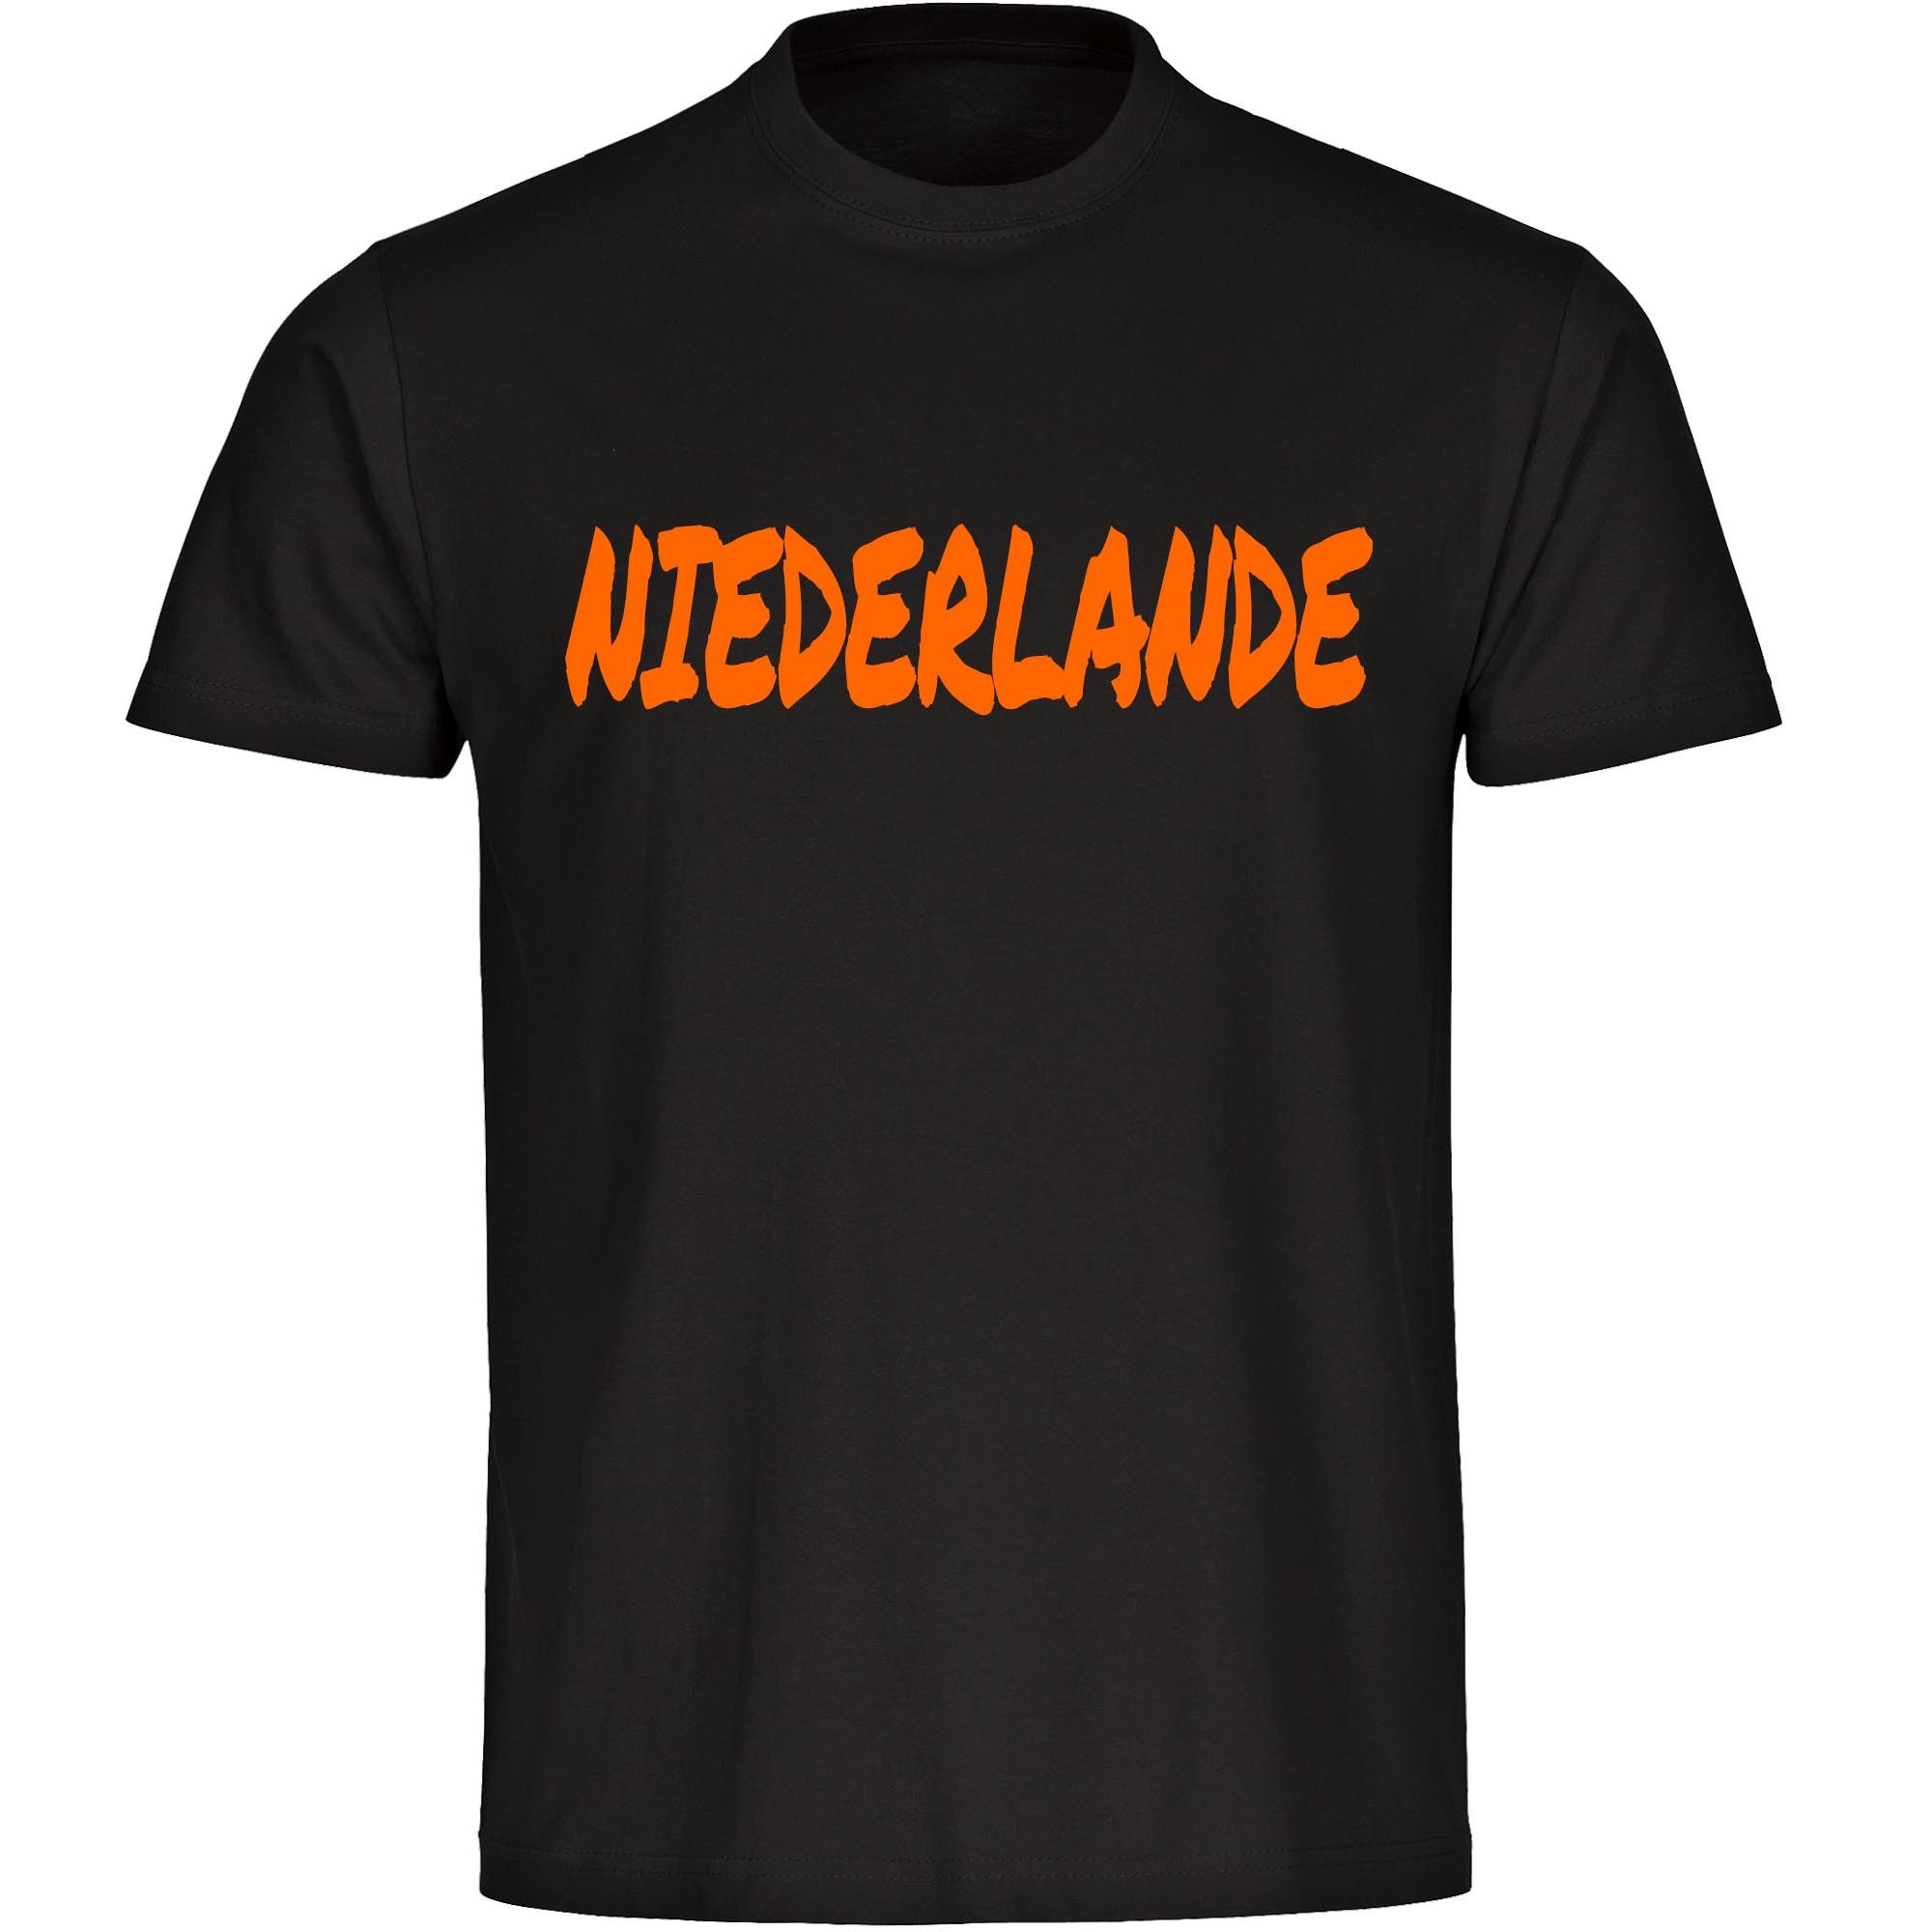 multifanshop T-Shirt Kinder Niederlande - Textmarker - Boy Girl